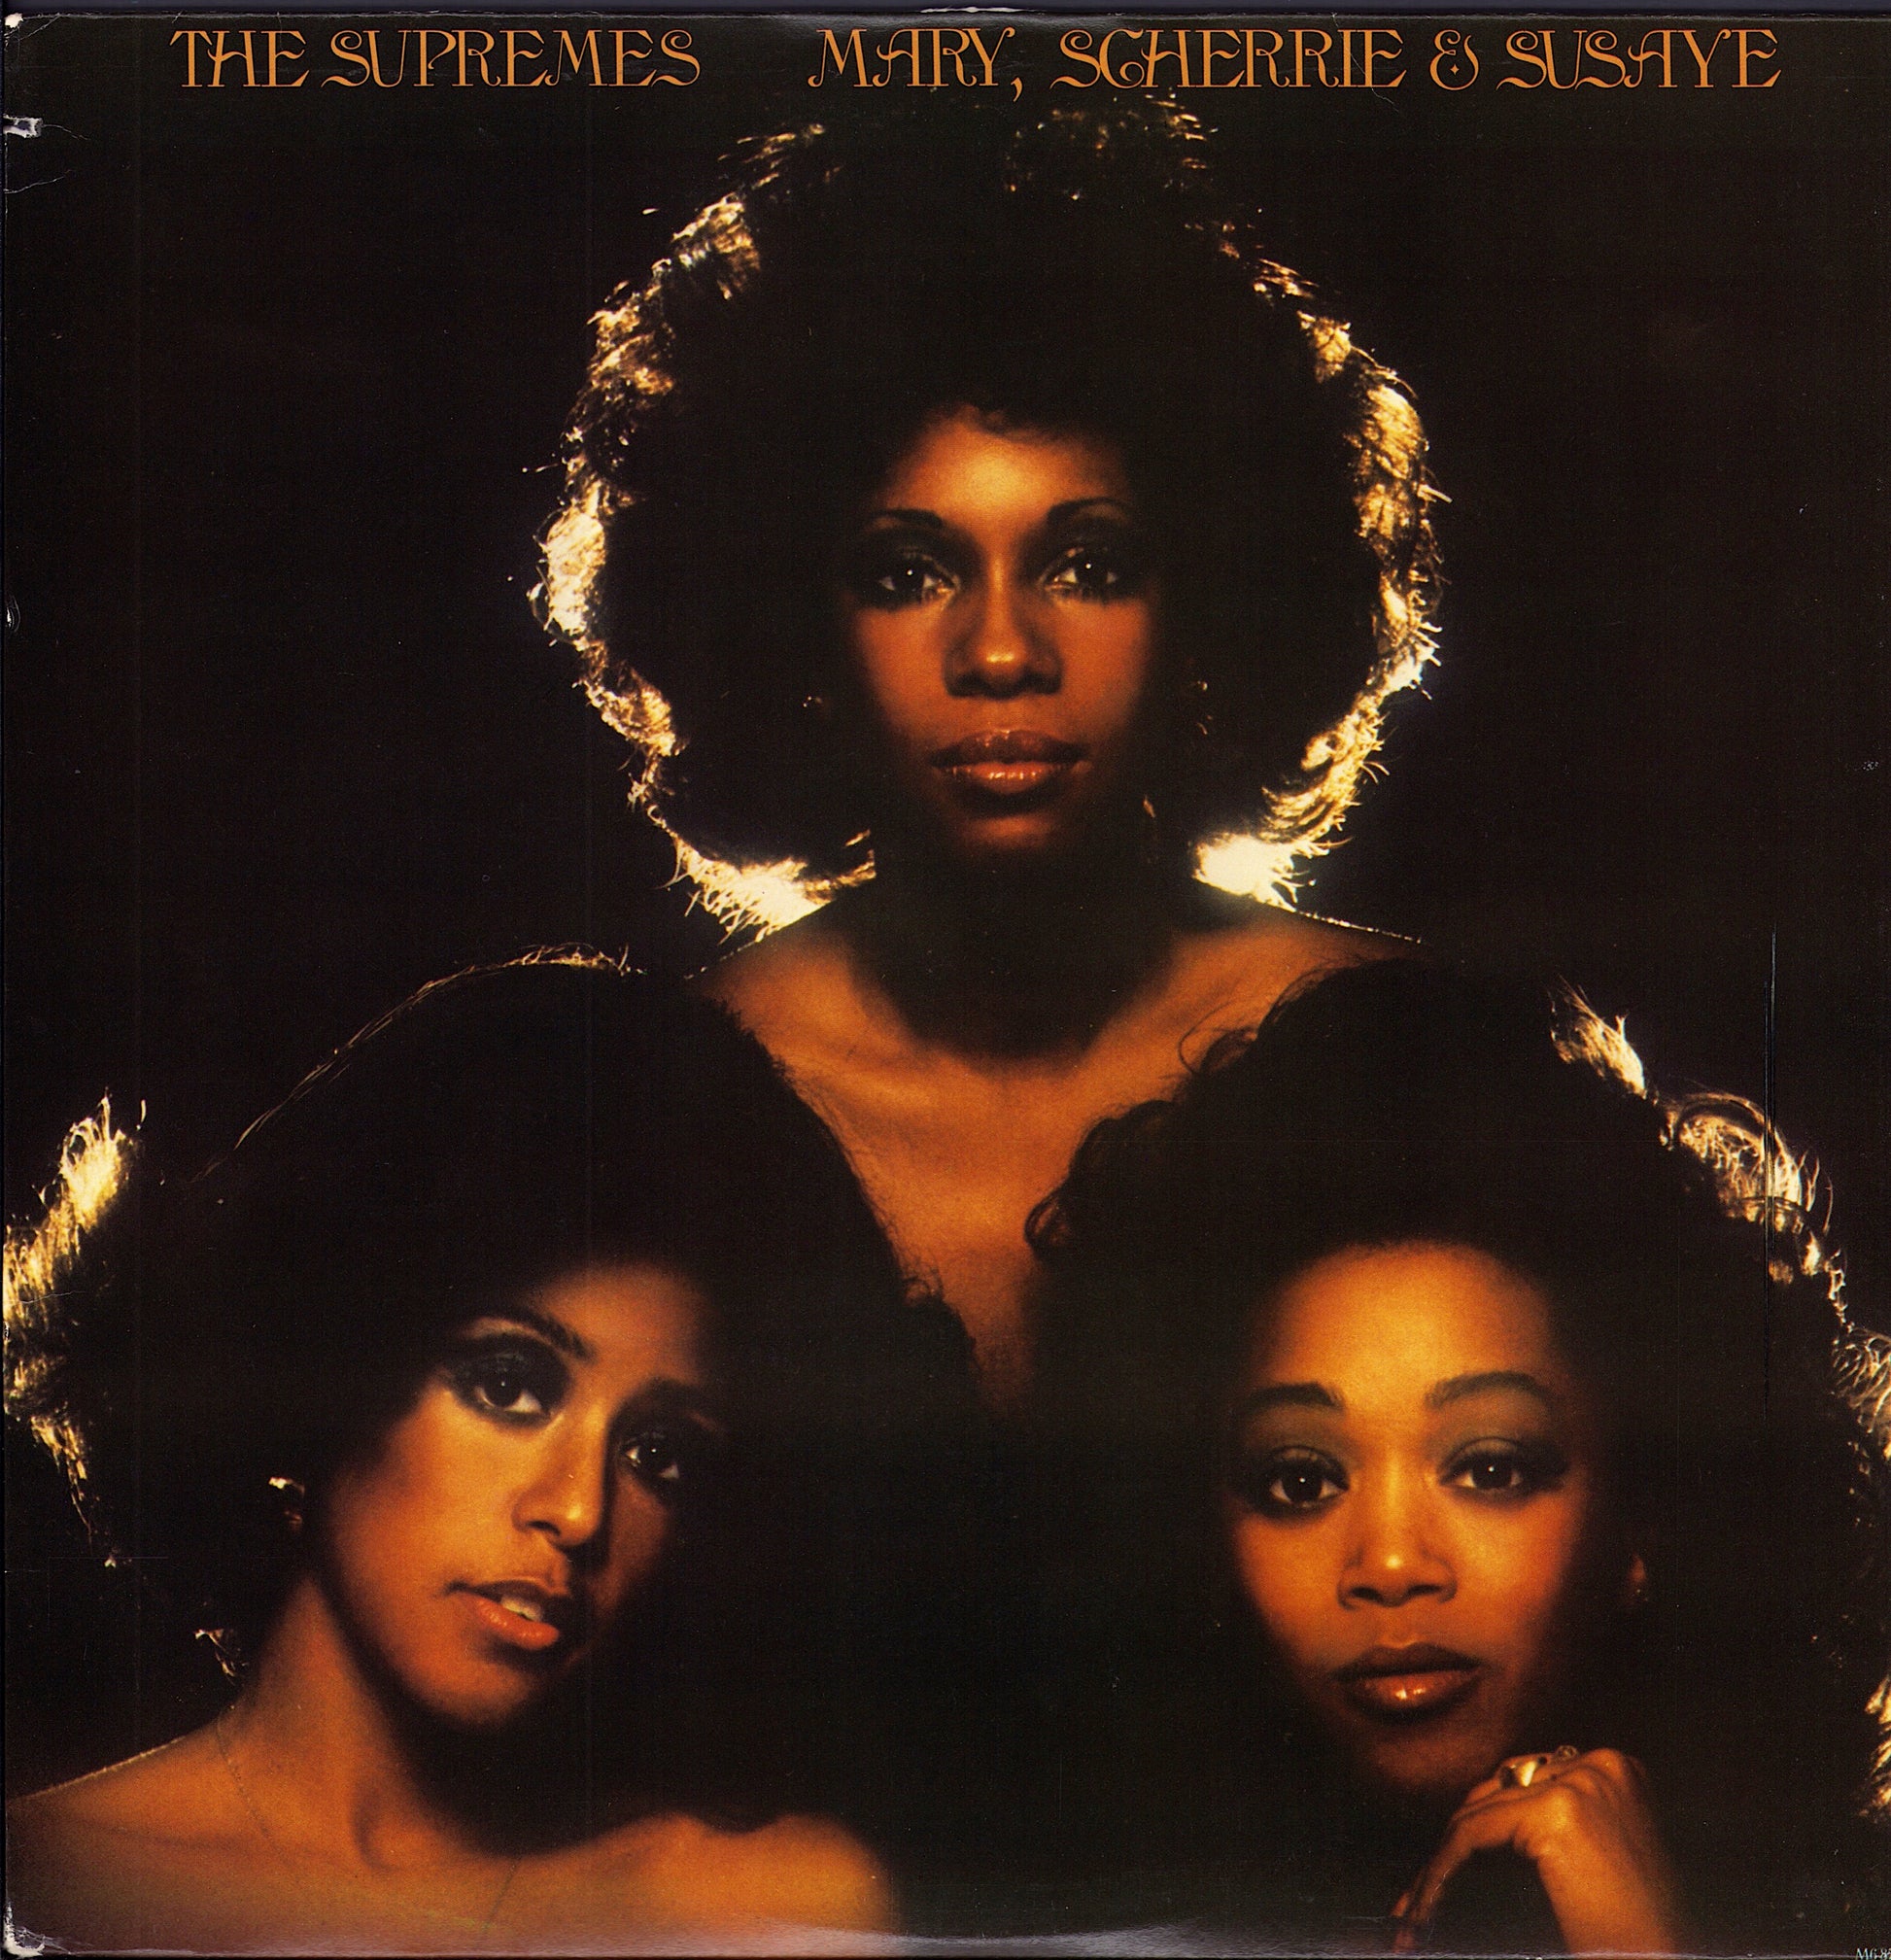 The Supremes - Mary, Scherrie & Susaye Vinyl LP